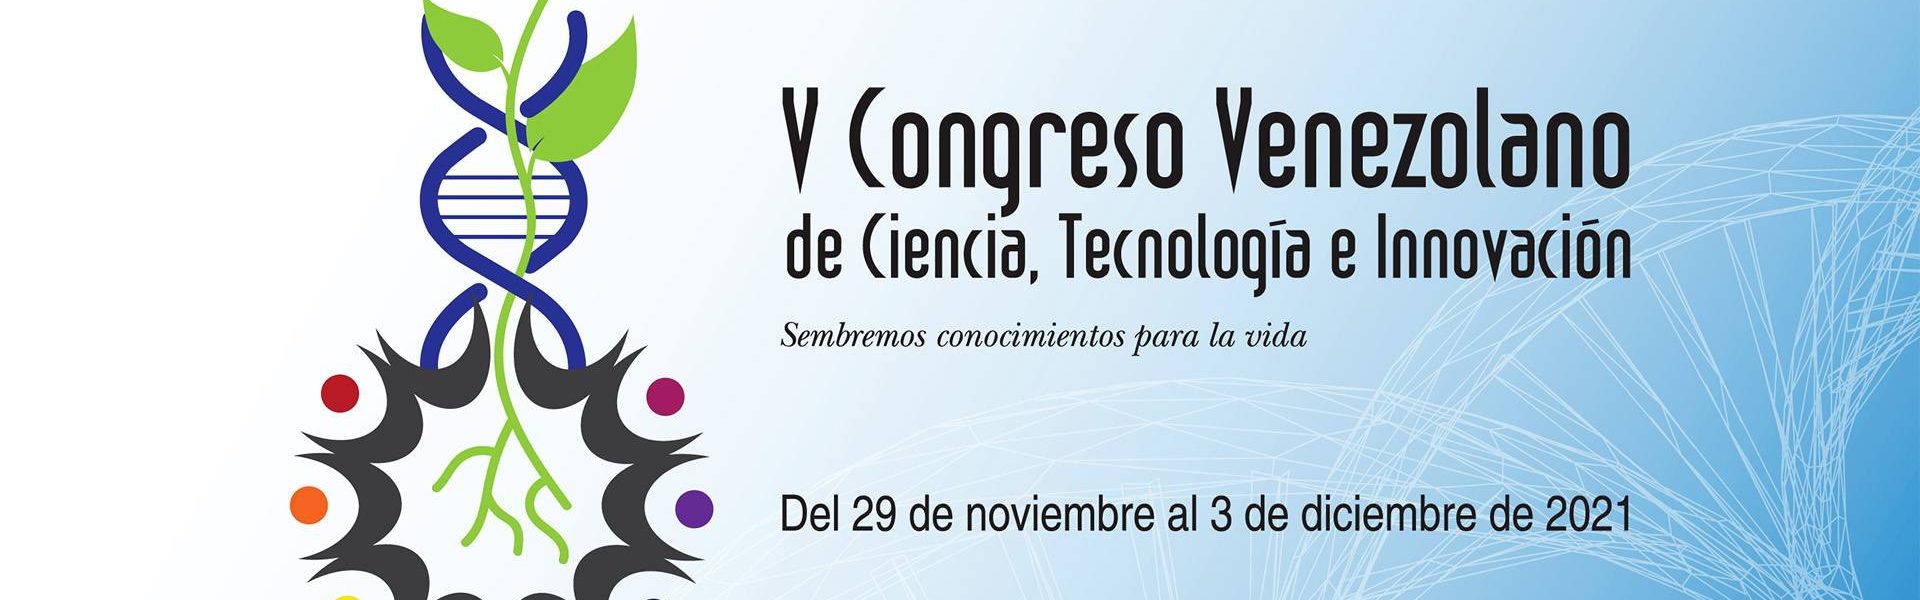 V Congreso Venezolano de Ciencia, Tecnología e Innovación,